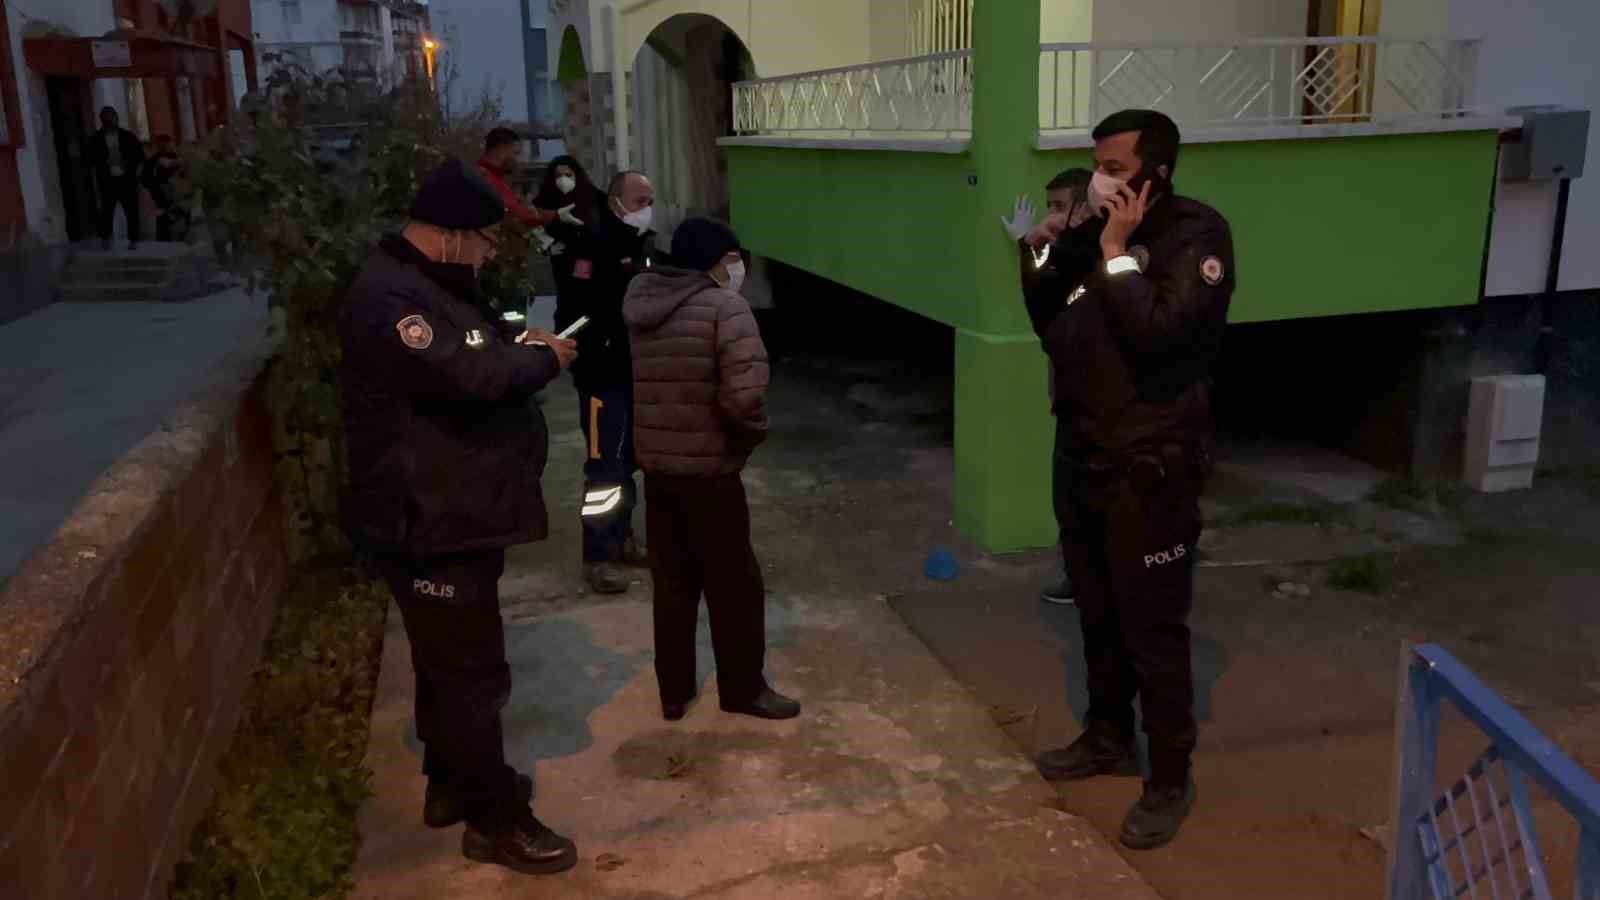 Aksaray'da Yalnız Yaşayan 74 yaşındaki servet ozan evinde ölü bulundu